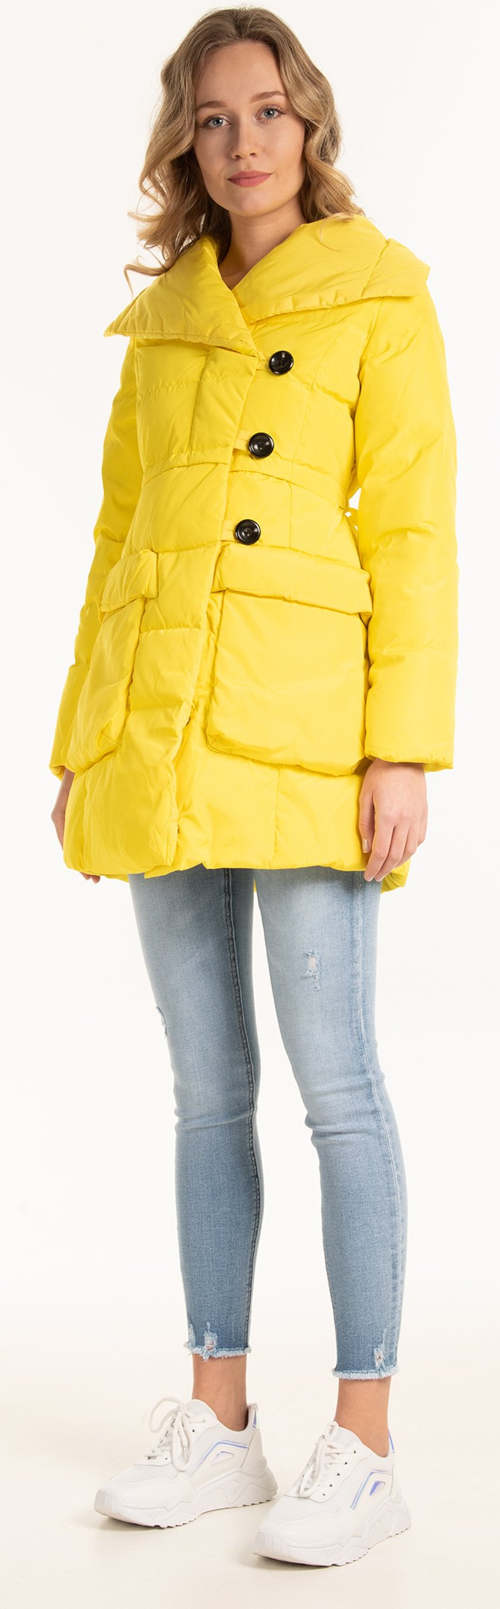 Jednobarevná žlutá prošívaná dámská zimní bunda